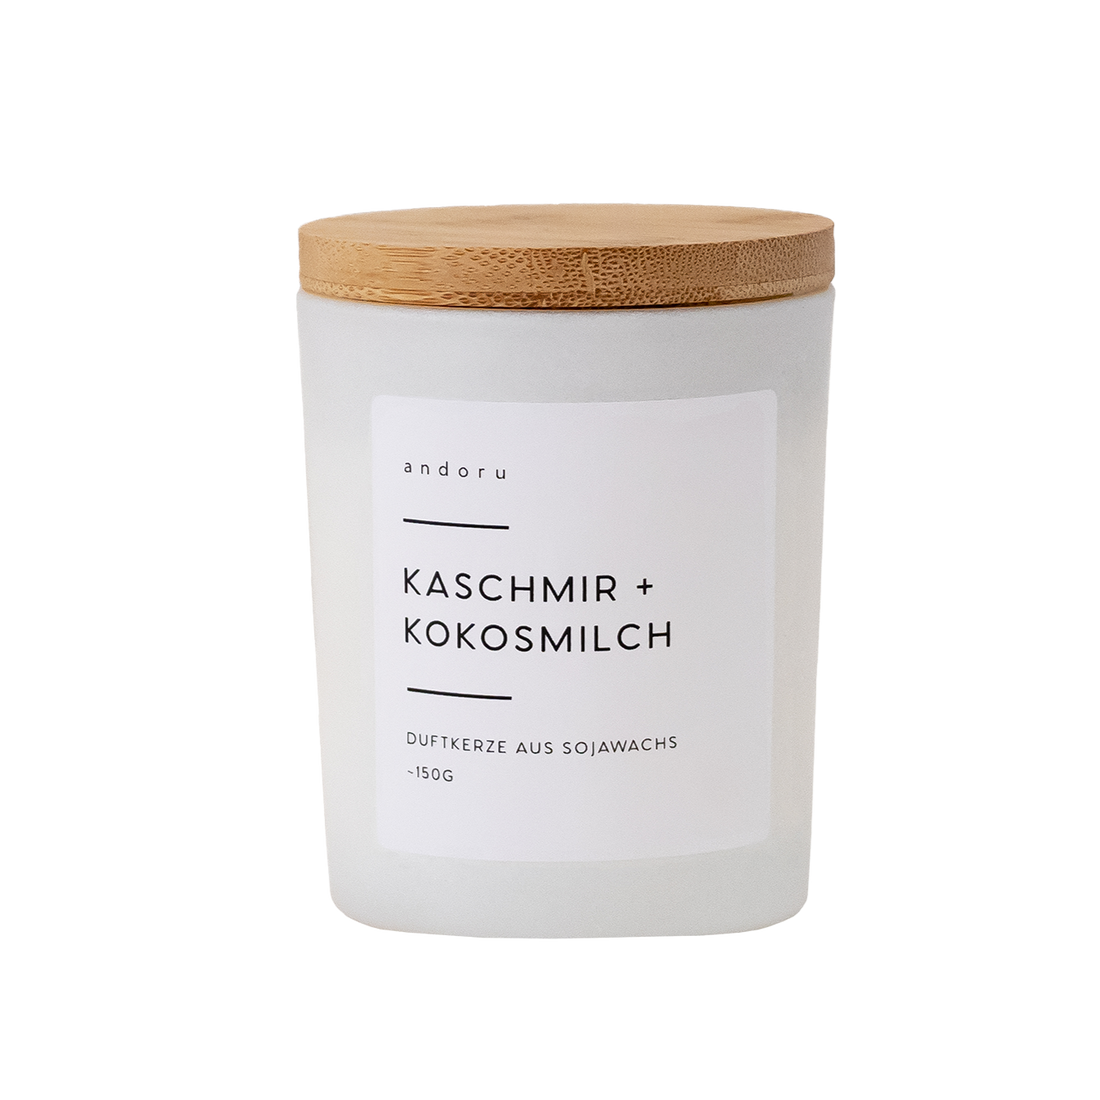 Kaschmir + Kokosmilch - andoru duftkerze sojawachs pflanzlich 